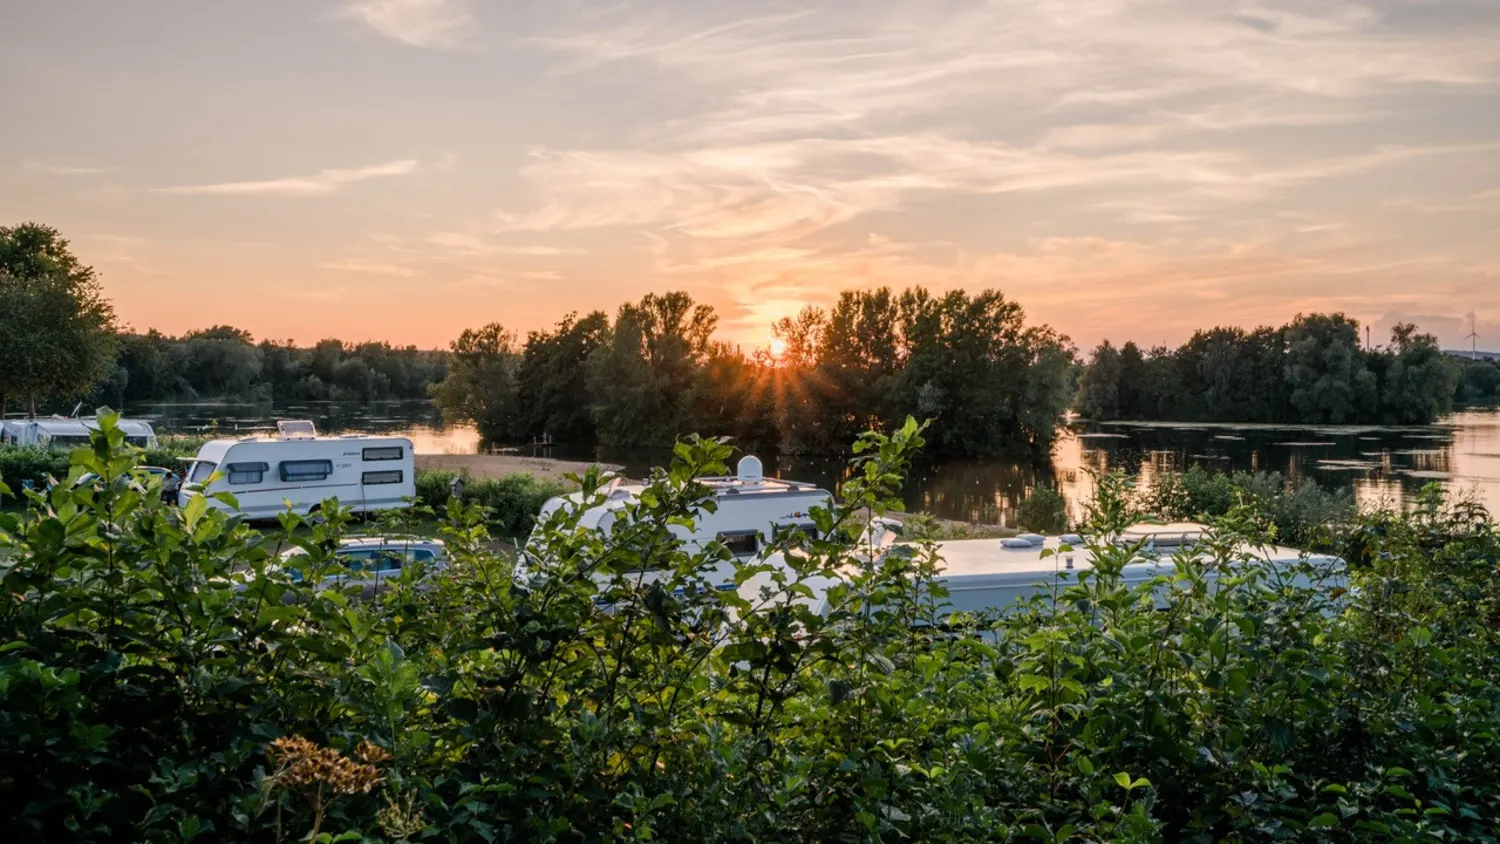 Camping-Urlaub vor der Haustür: Die besten Campingplätze in NRW